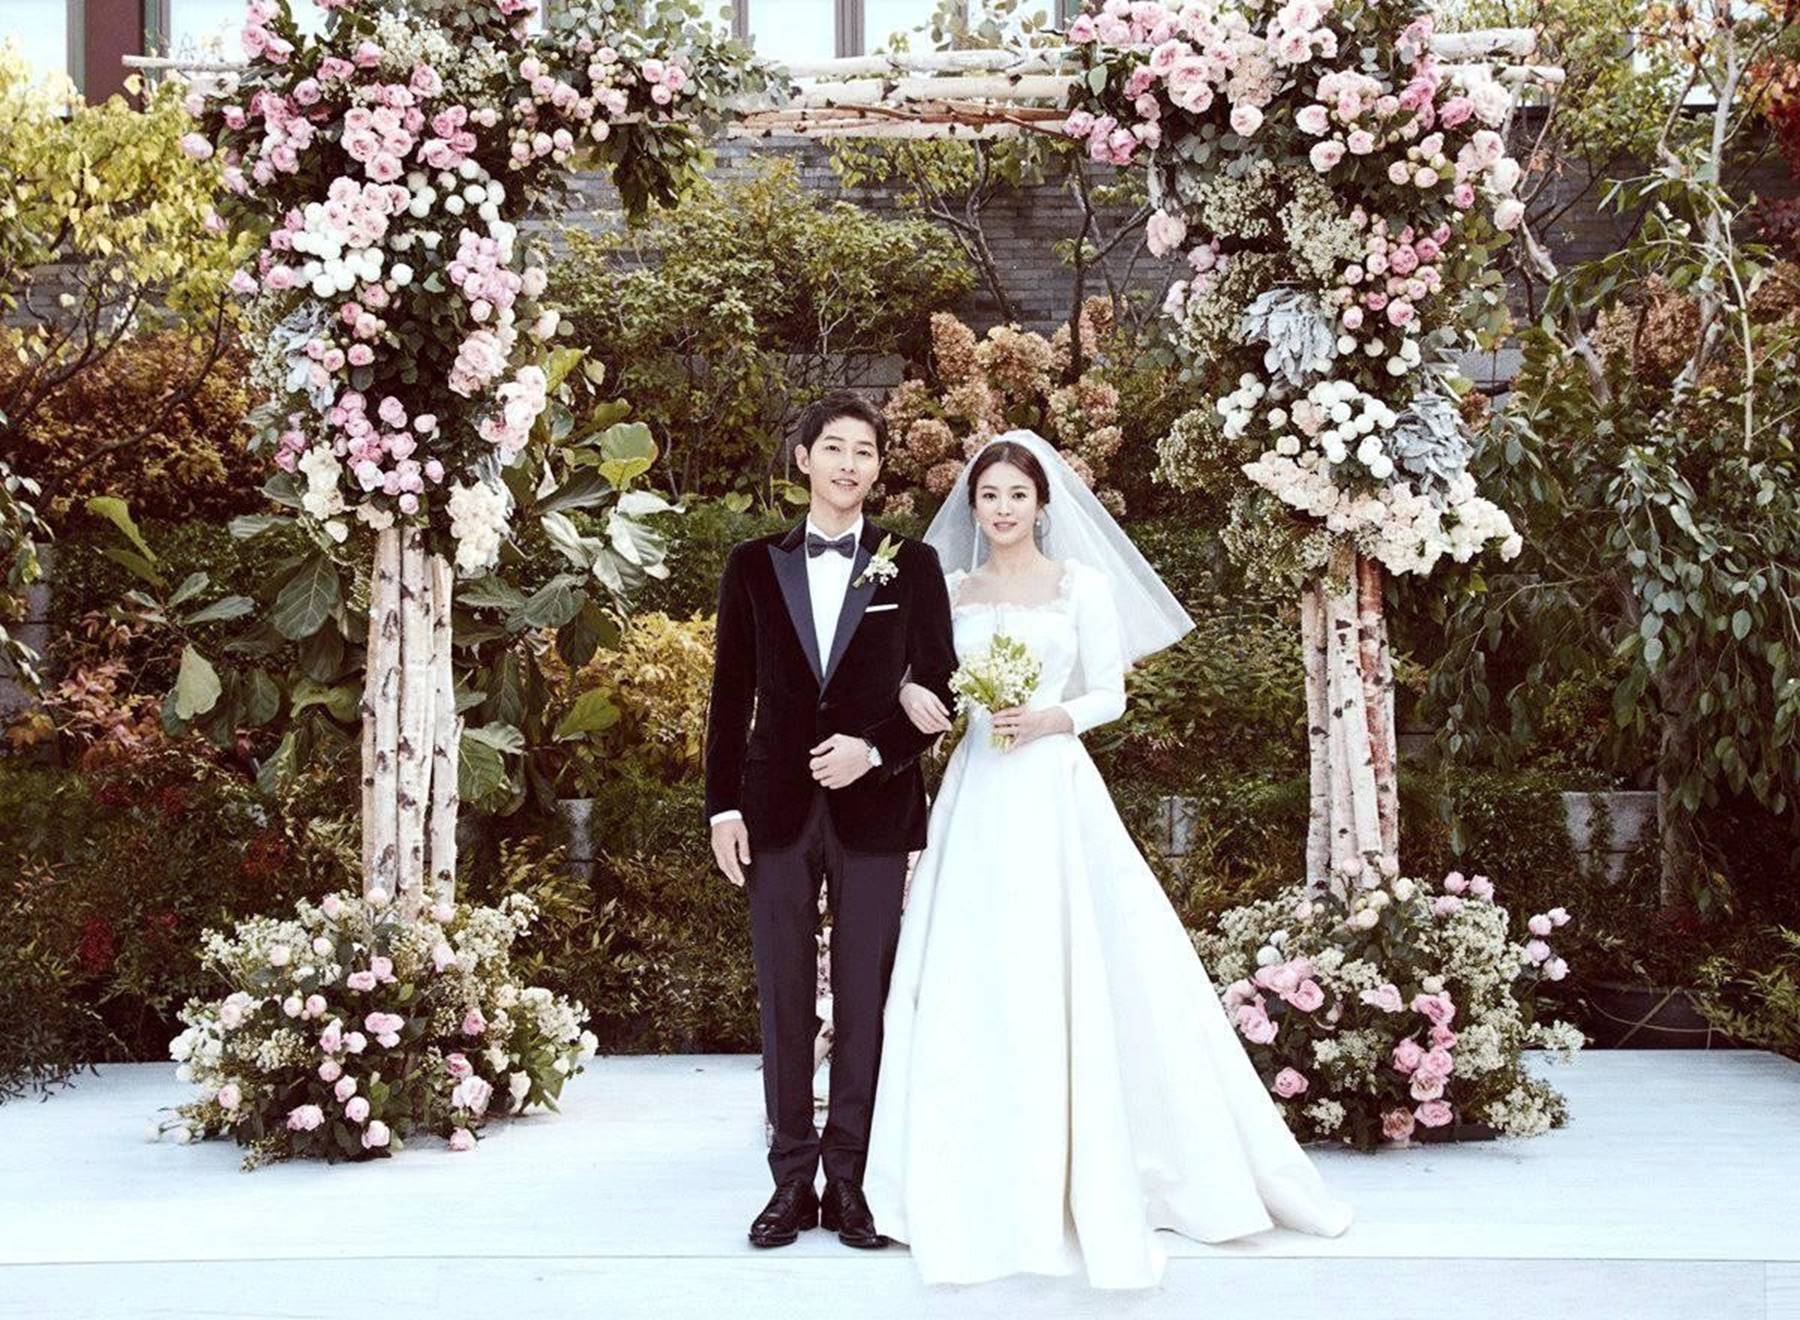 Đau lòng nhất hôm nay: 2 ngày sau khi đệ đơn ly hôn, Song Hye Kyo vẫn giữ bức ảnh cưới 4 triệu like từ 2 năm trước-3